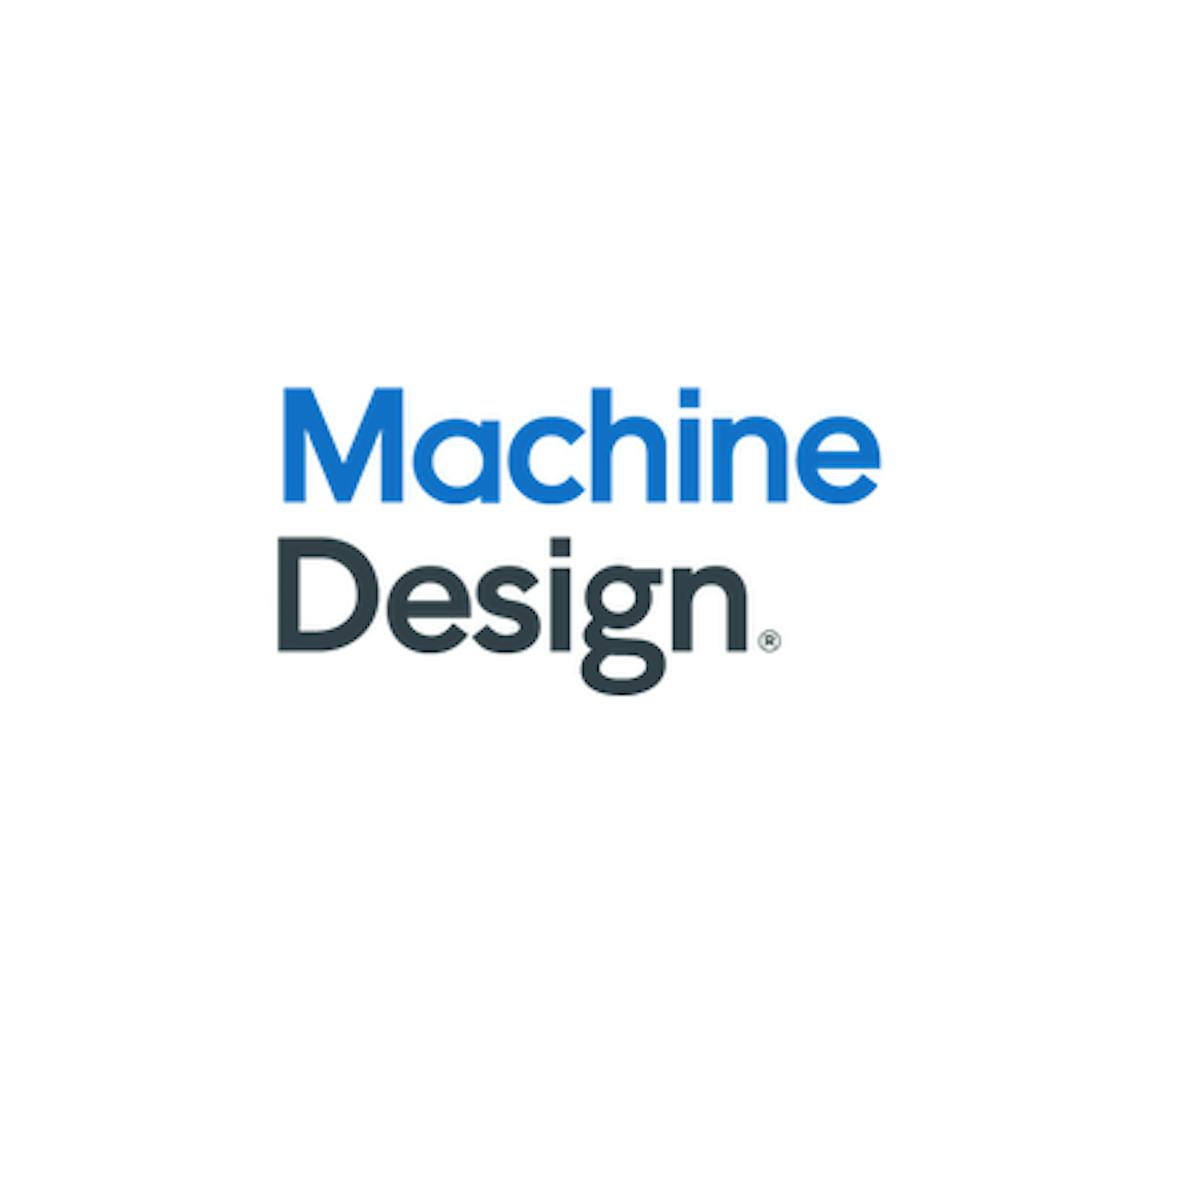 Machinedesign Logo 5f8869fd8b4cf